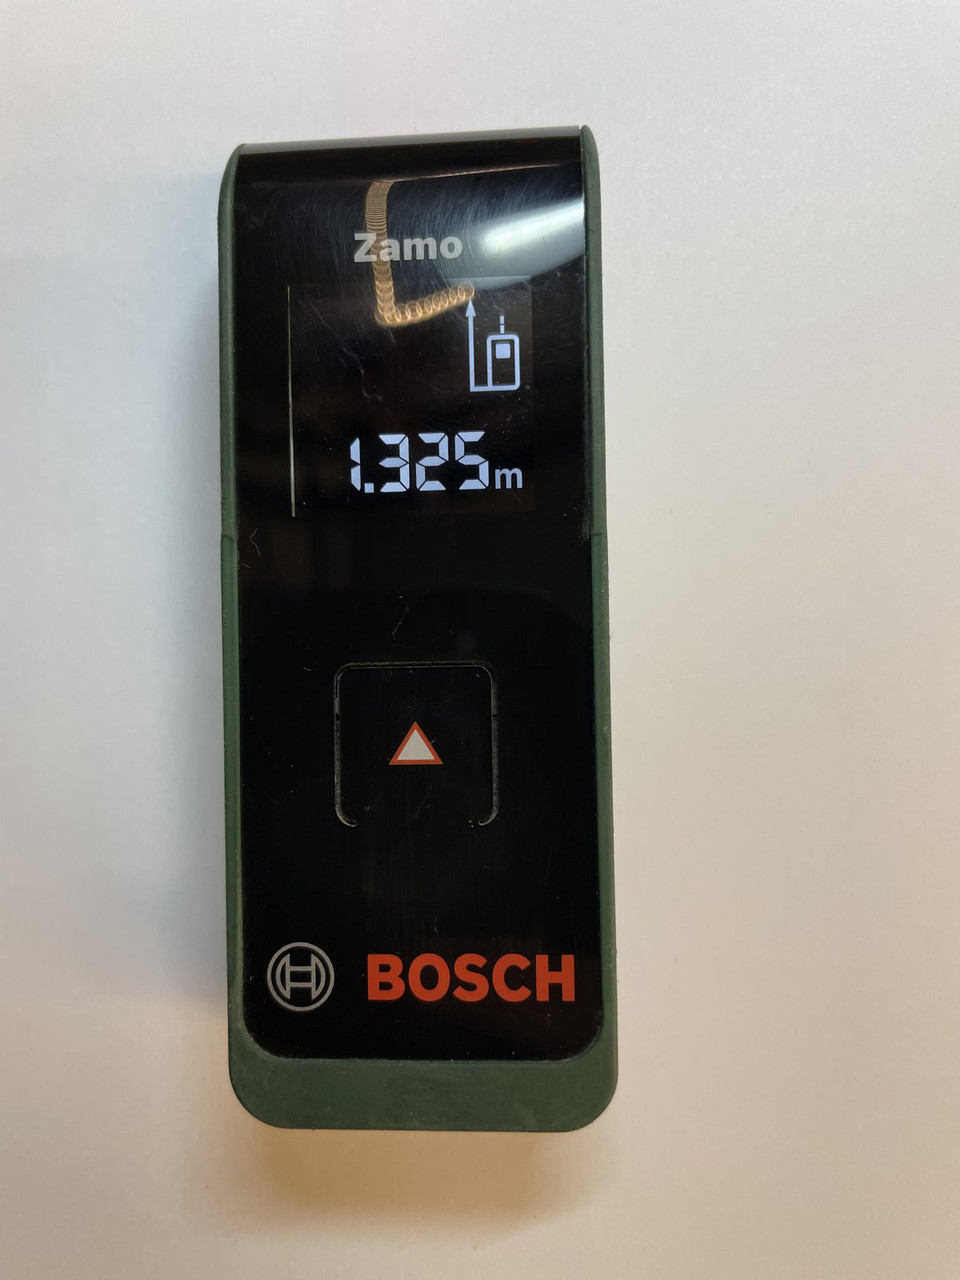 Bosch Zamo II Laser Measure